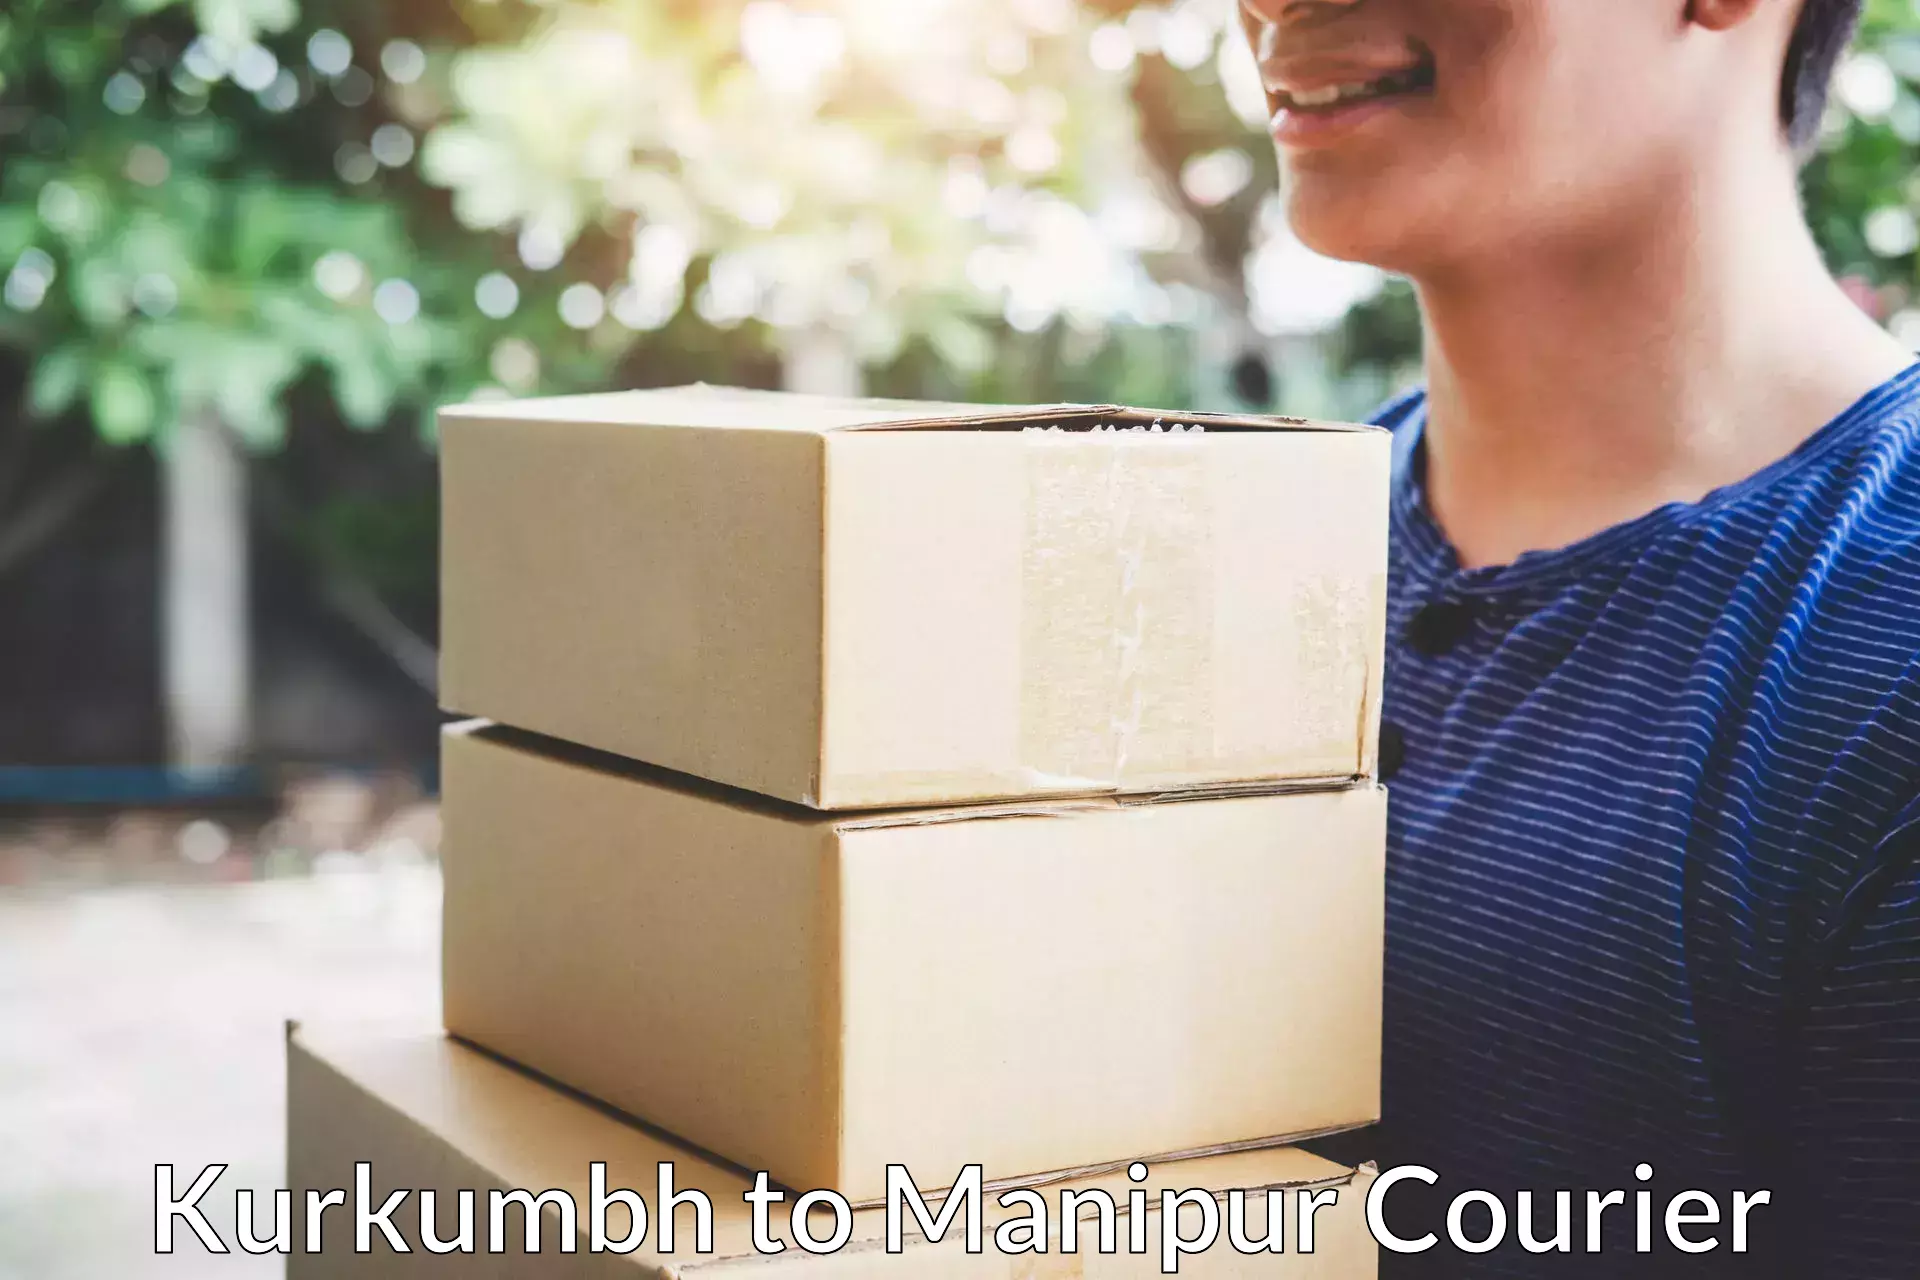 Budget-friendly movers Kurkumbh to Manipur